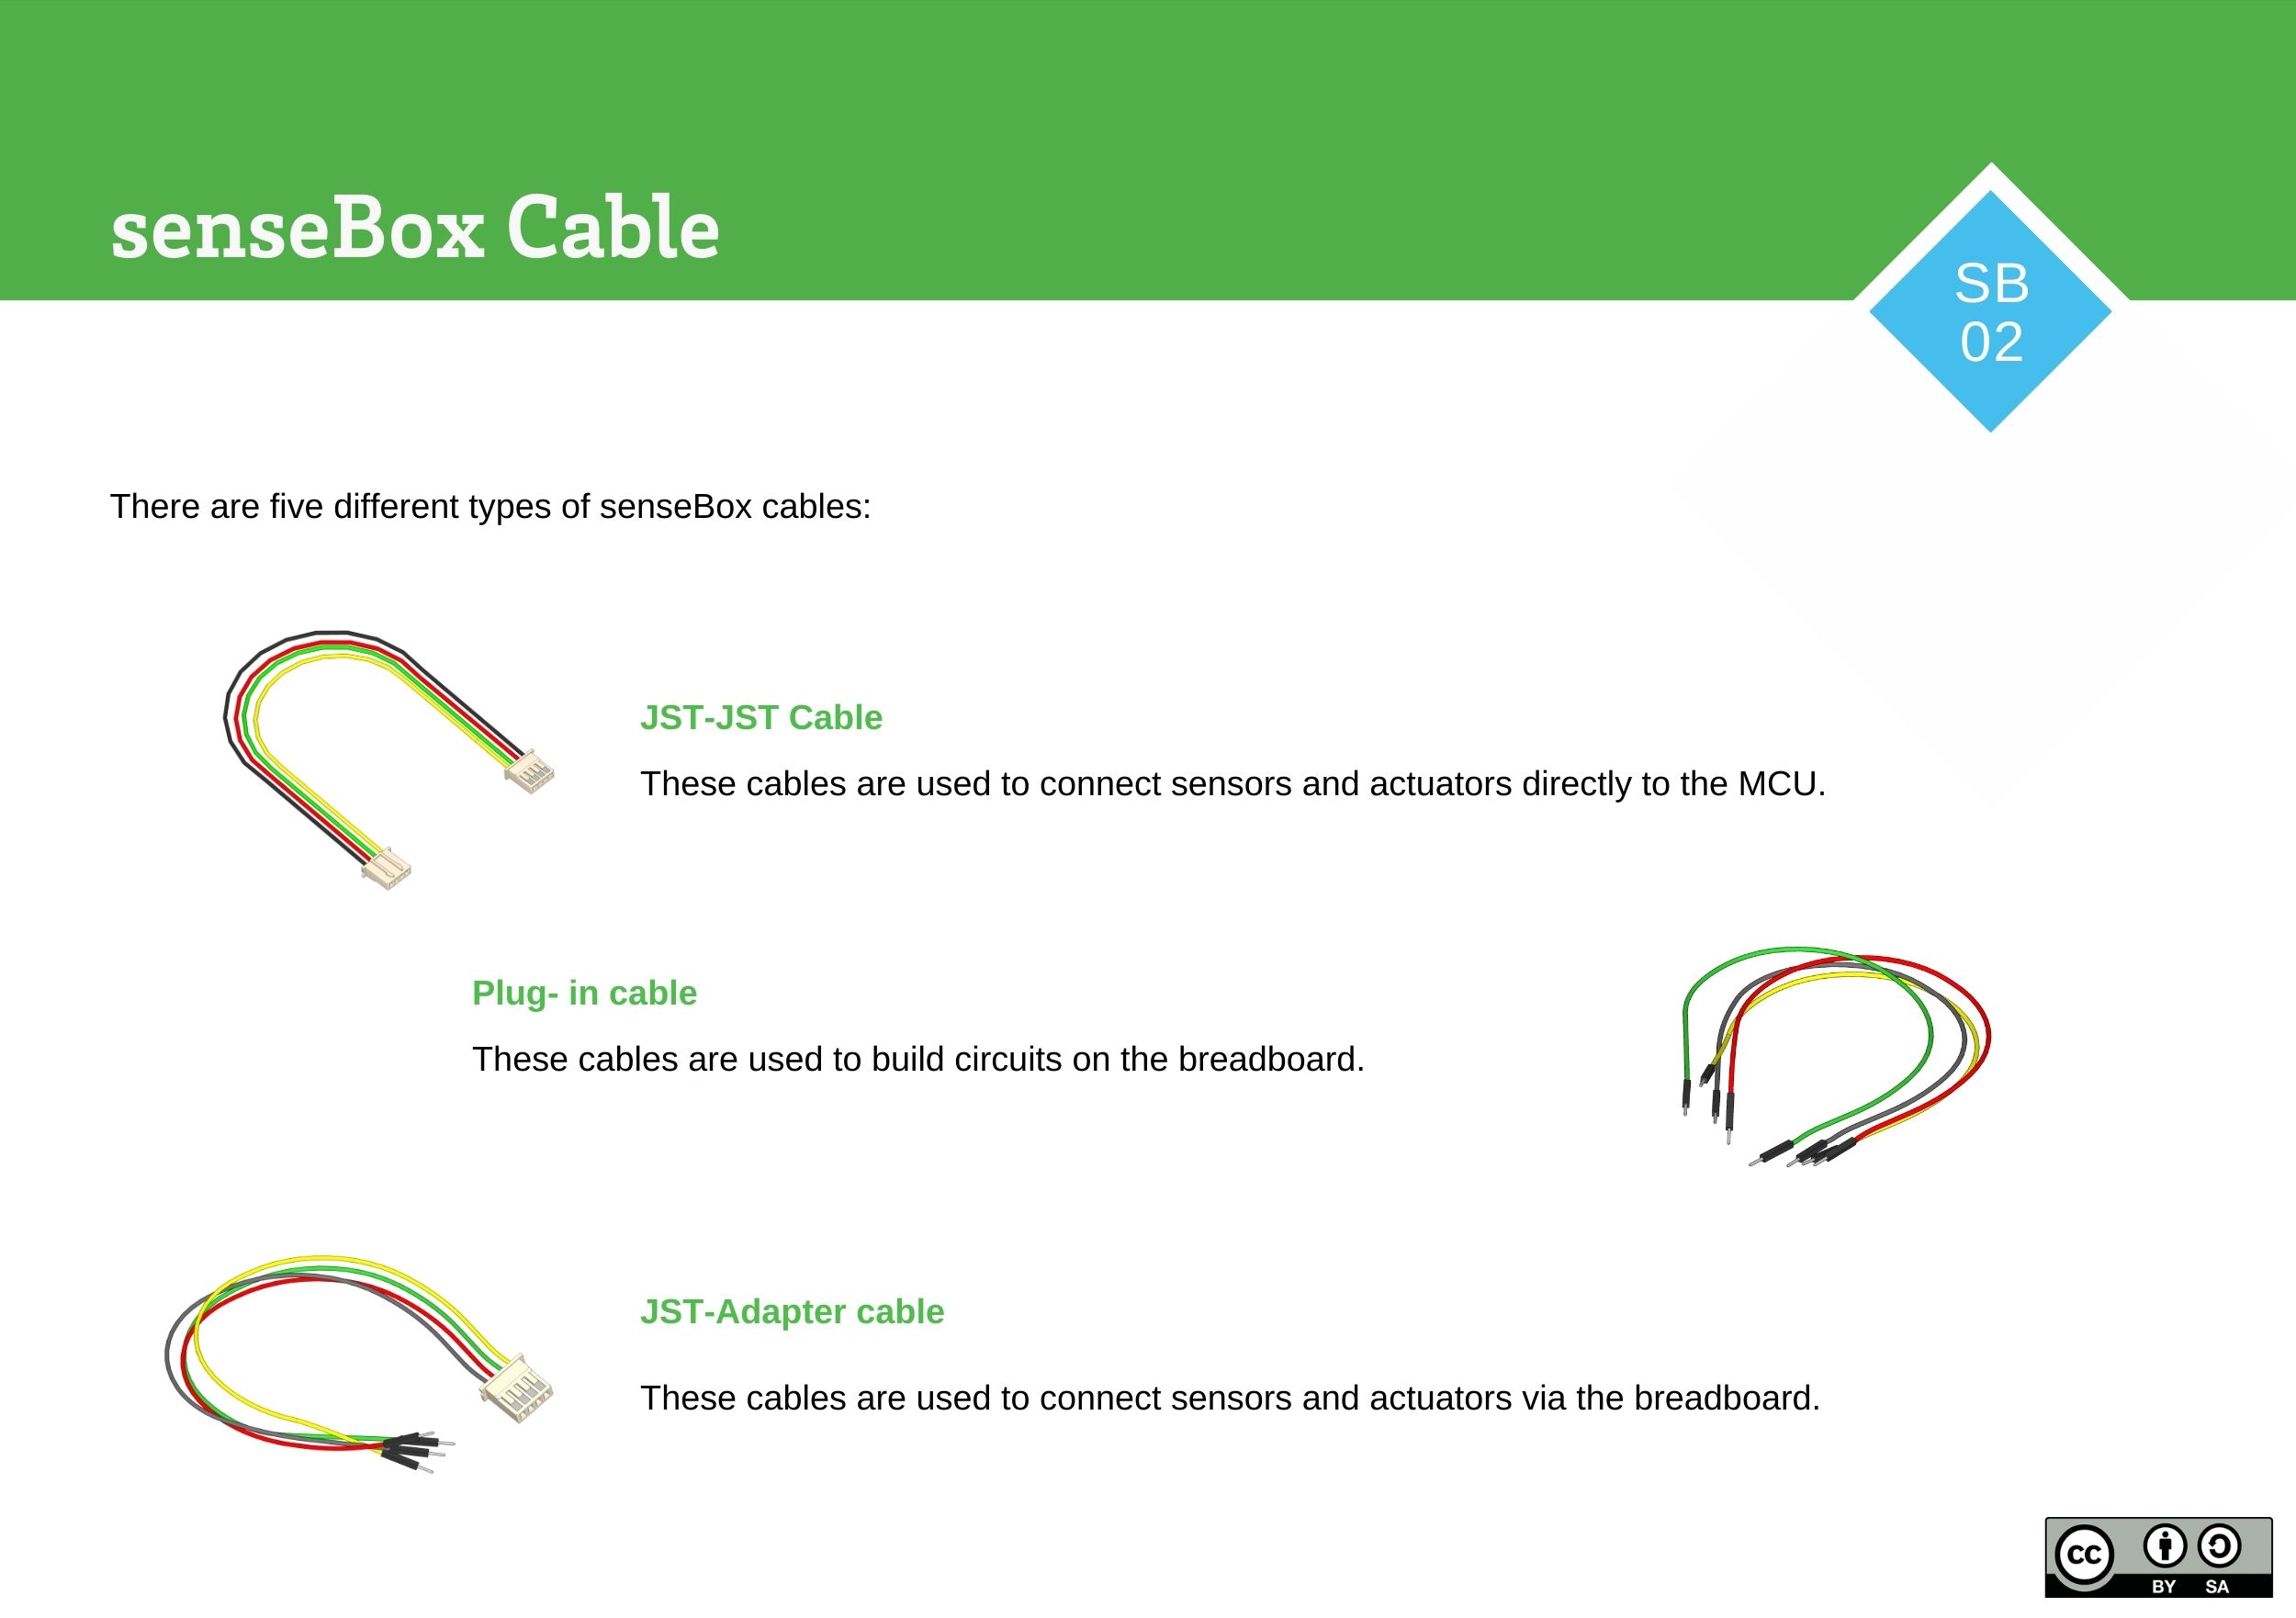 senseBox Cables